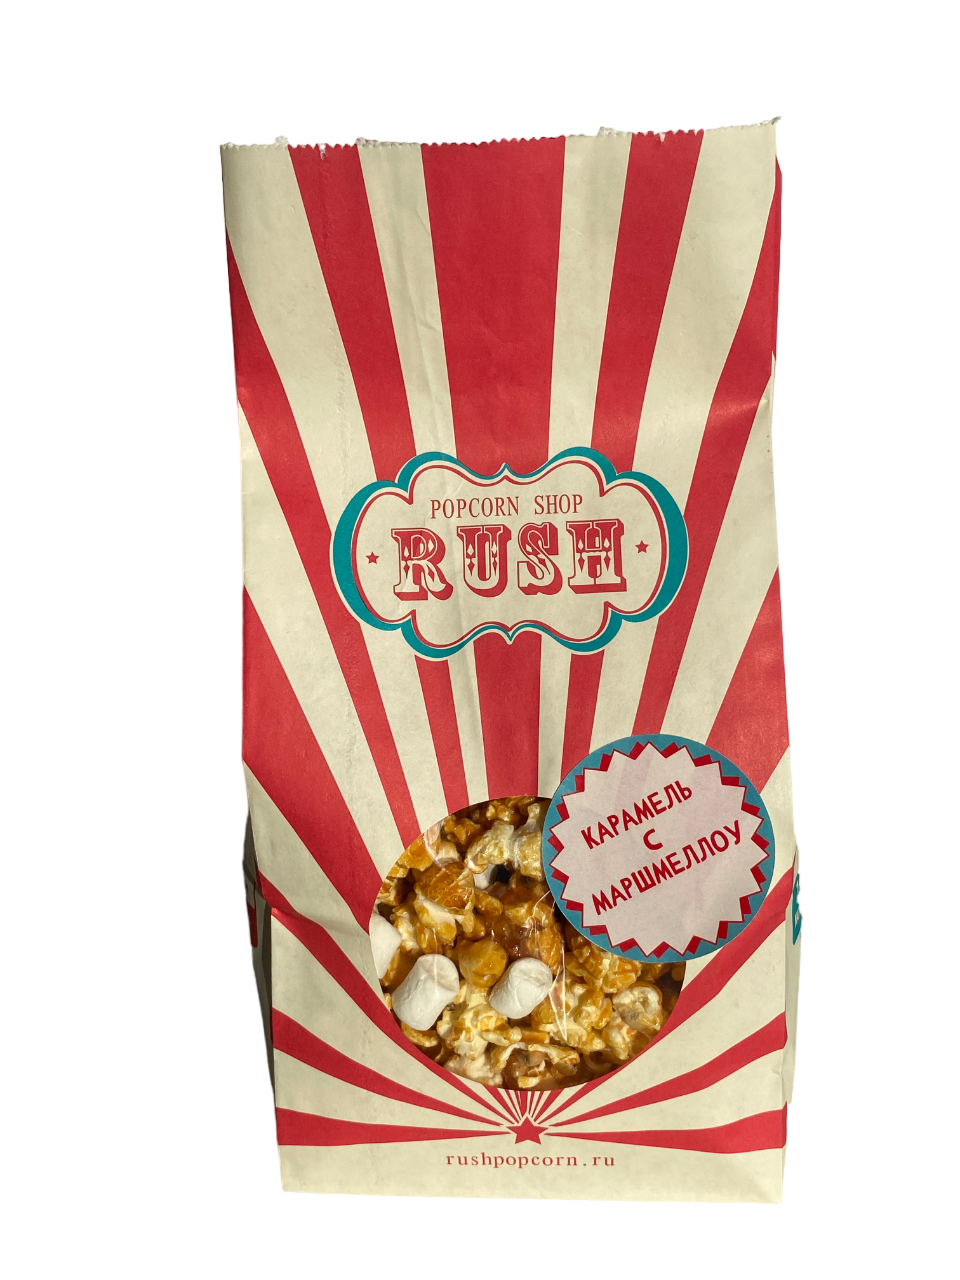 Попкорн Popcorn shop rush готовый, карамельный, с маршмеллоу, 100 г